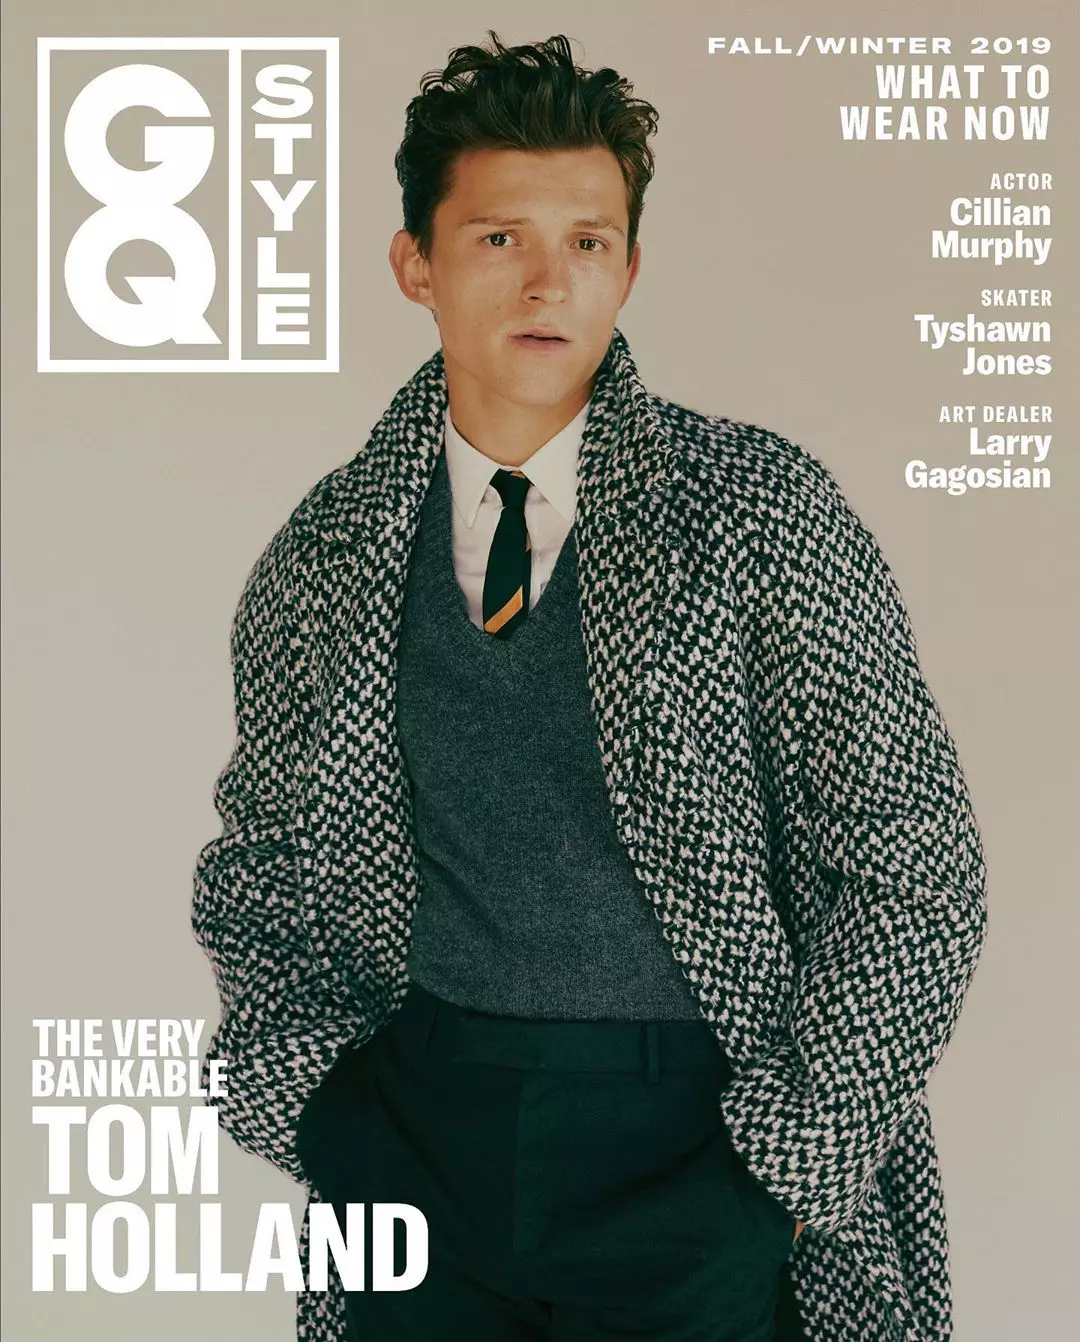 Թոմ Հոլանդ Ֆանի Լատուր-Լամբերտի կողմից GQ Style 2019 թվականի սեպտեմբերի համար